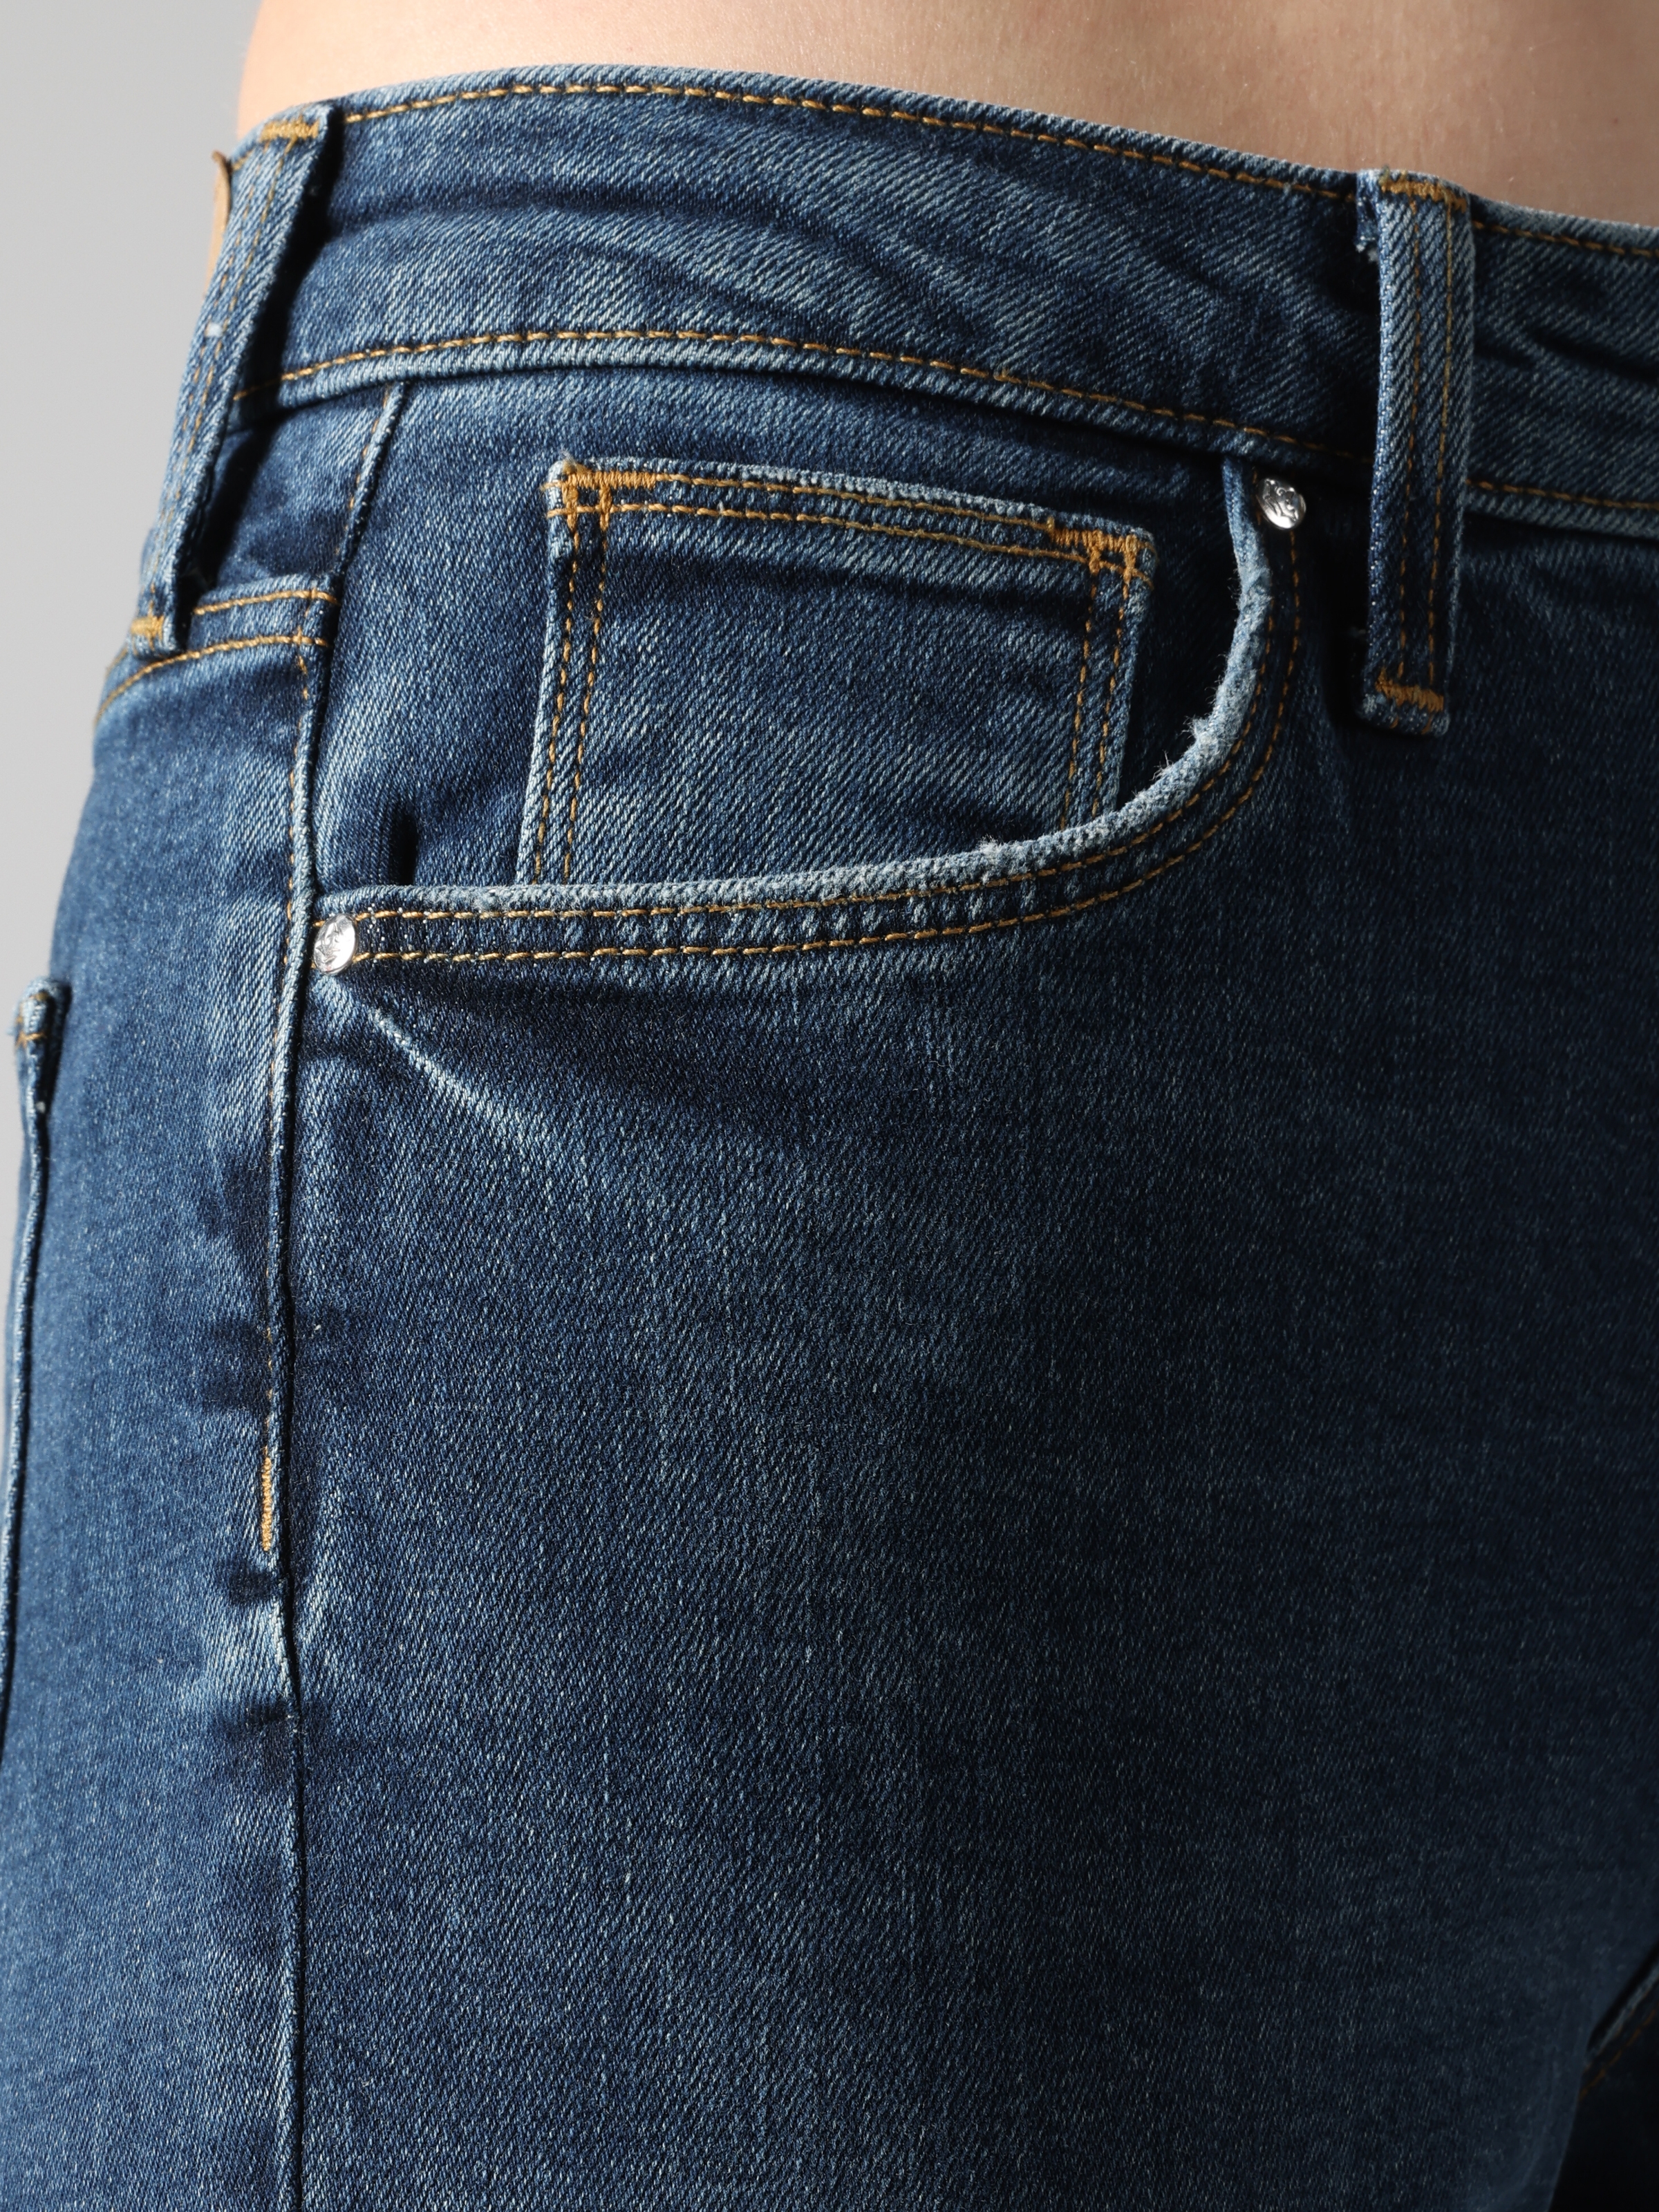 Afișați detalii pentru Pantaloni De Dama Albastru Slim Fit 891 MAYA